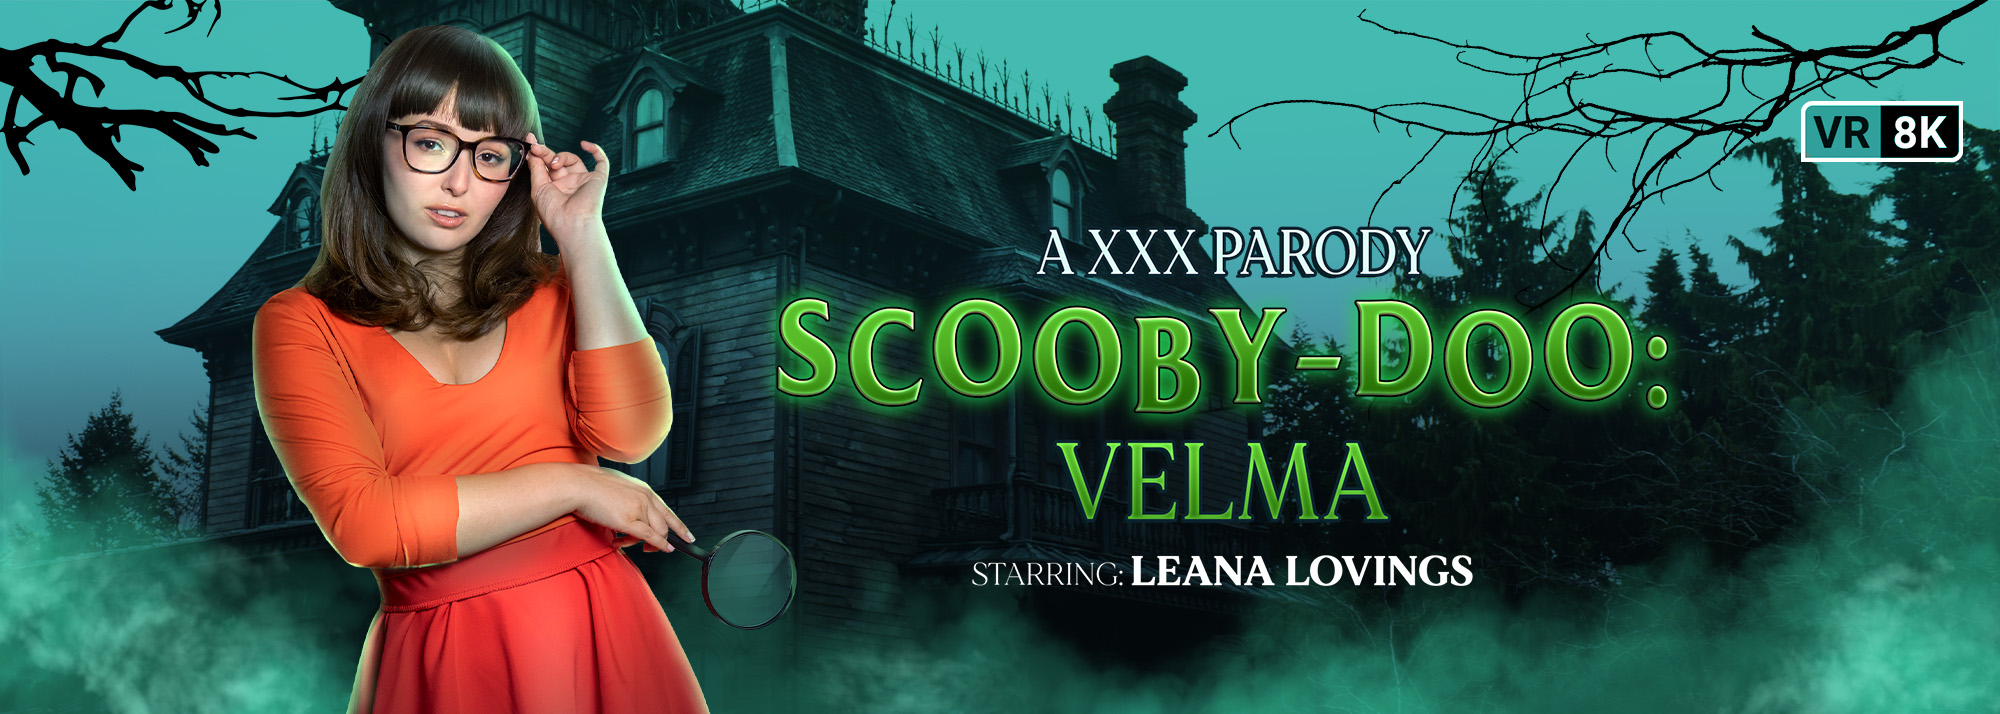 Scooby-Doo: Velma (A XXX Parody) - VR Porn Video, Starring Leana Lovings VR